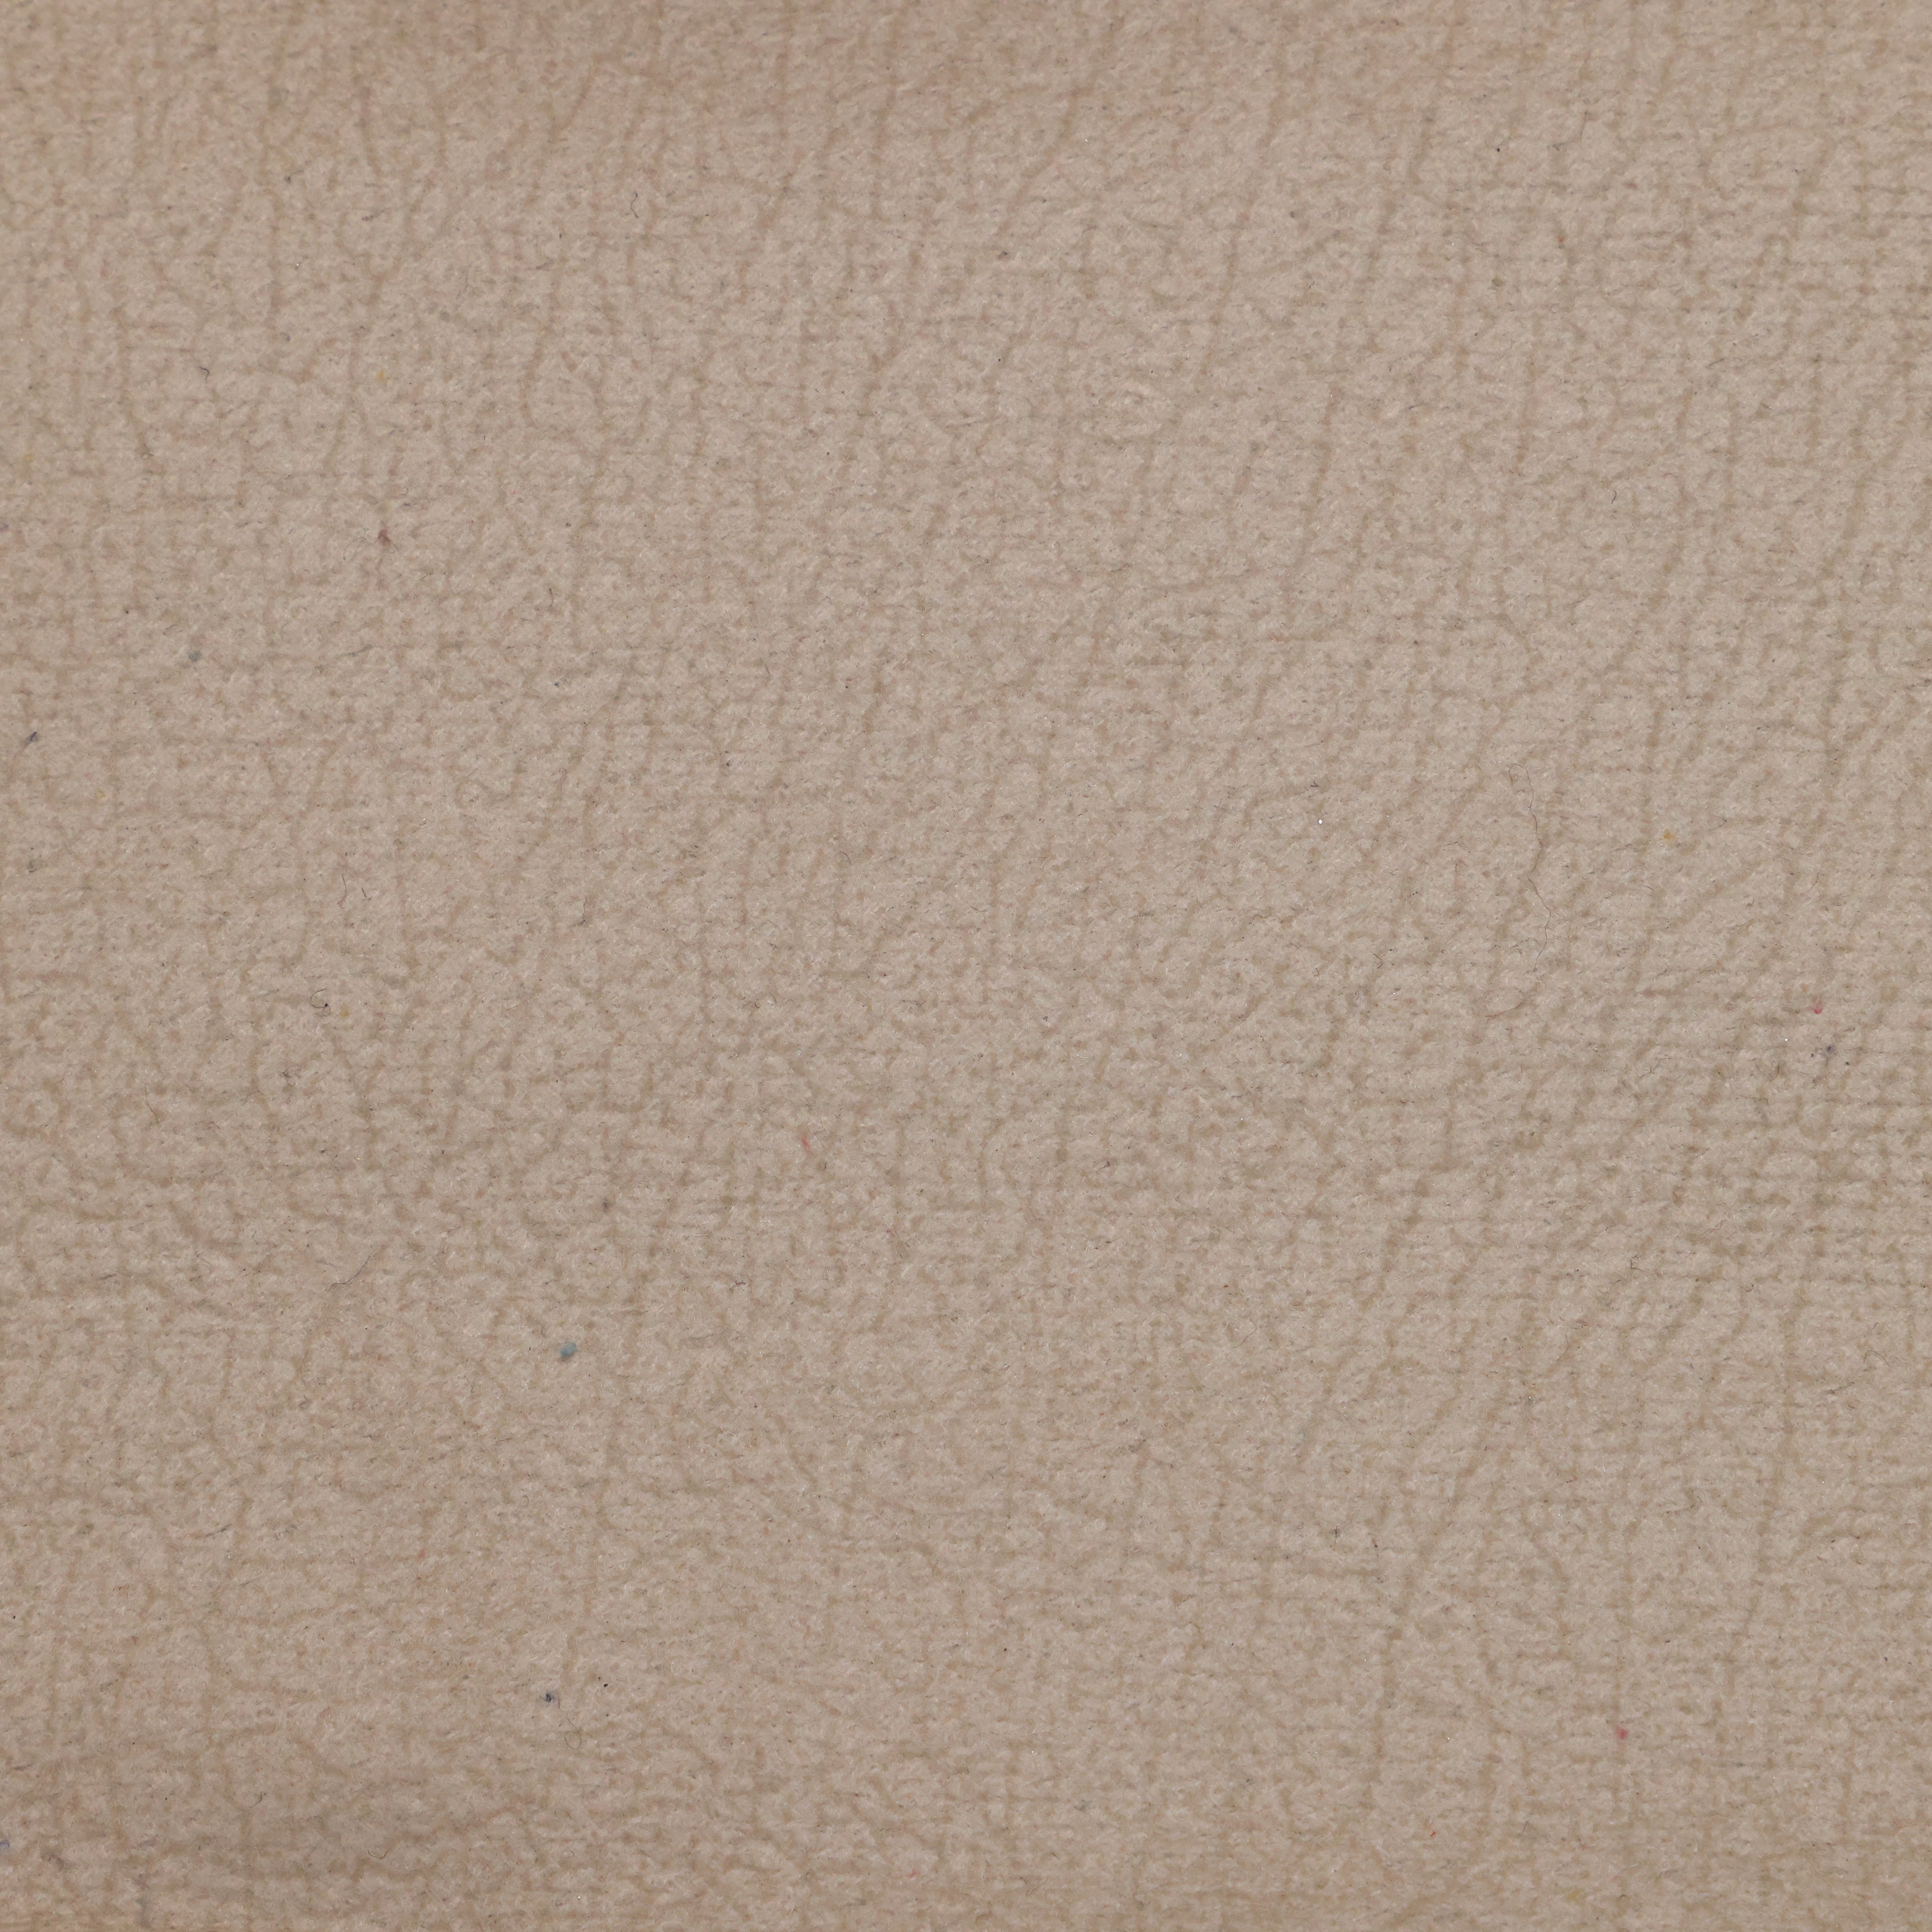 قماش جلد مقلوب 0241 - Damson Furnitureقماش جلد مقلوب 0241